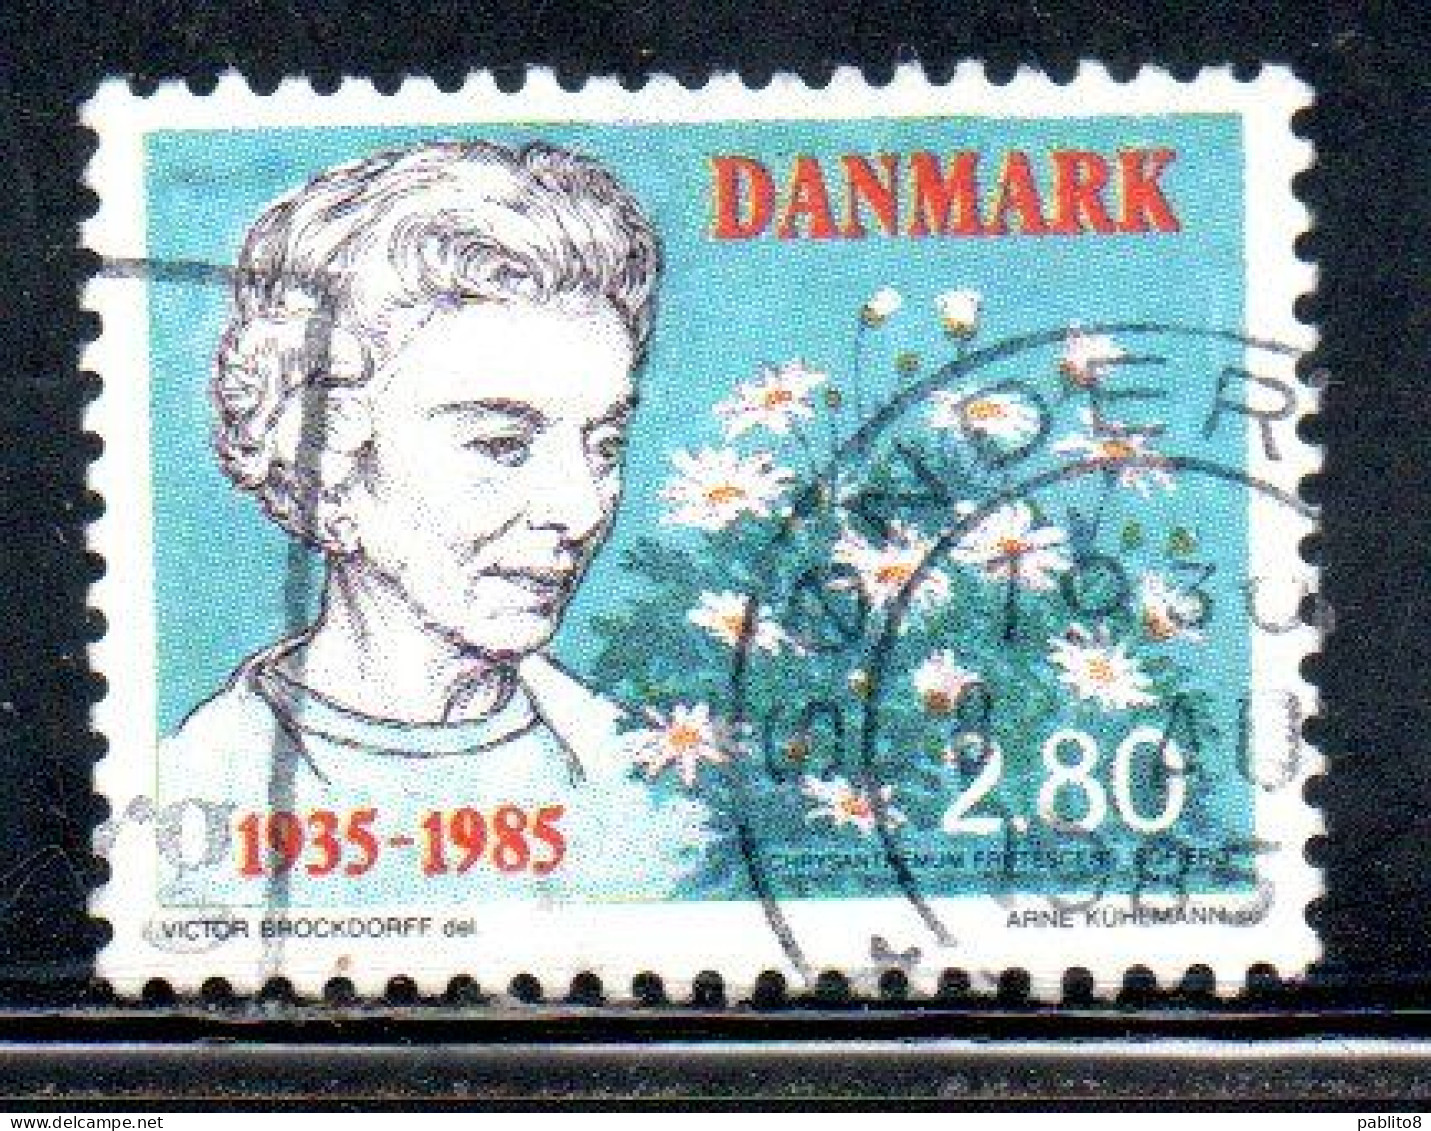 DANEMARK DANMARK DENMARK DANIMARCA 1985 ARRIVAL OF QUEEN INGRID 50th ANNIVERSAY 2.80k USED USATO OBLITERE' - Usati